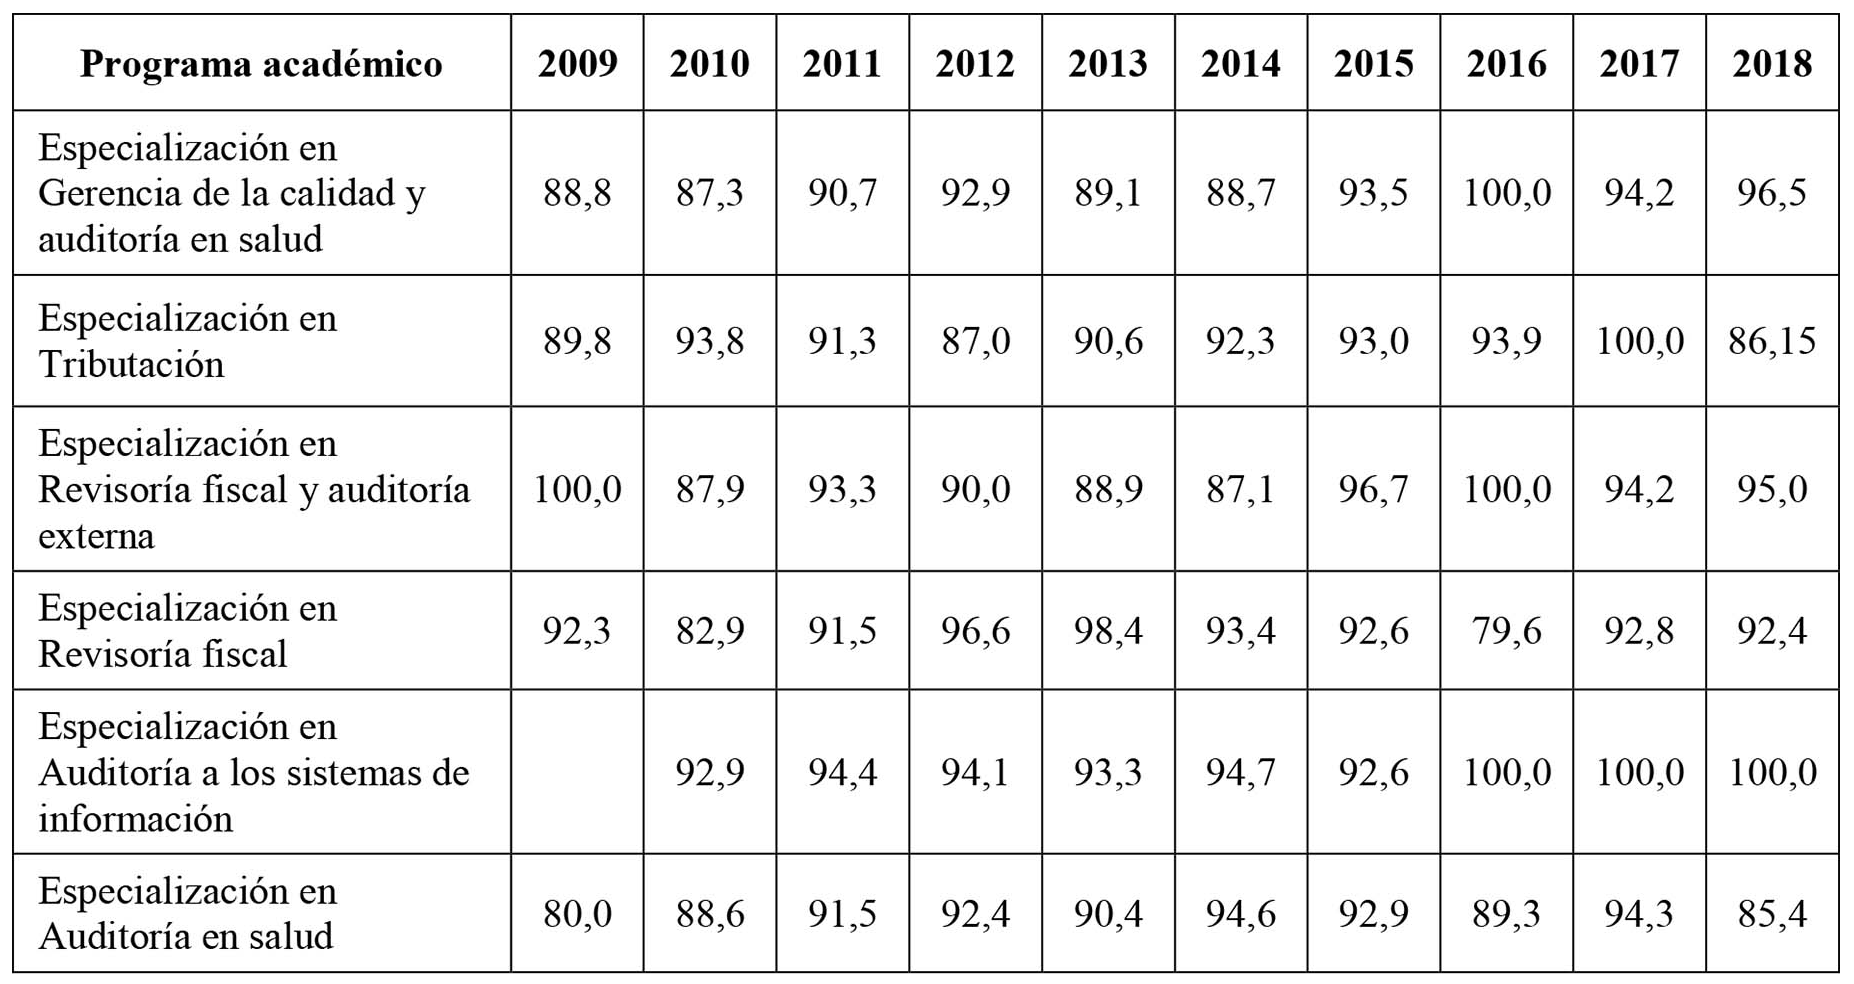 Tasa de inserción laboral 2009-2018 de los programas académicos posgradual en la disciplina contable (en porcentajes)